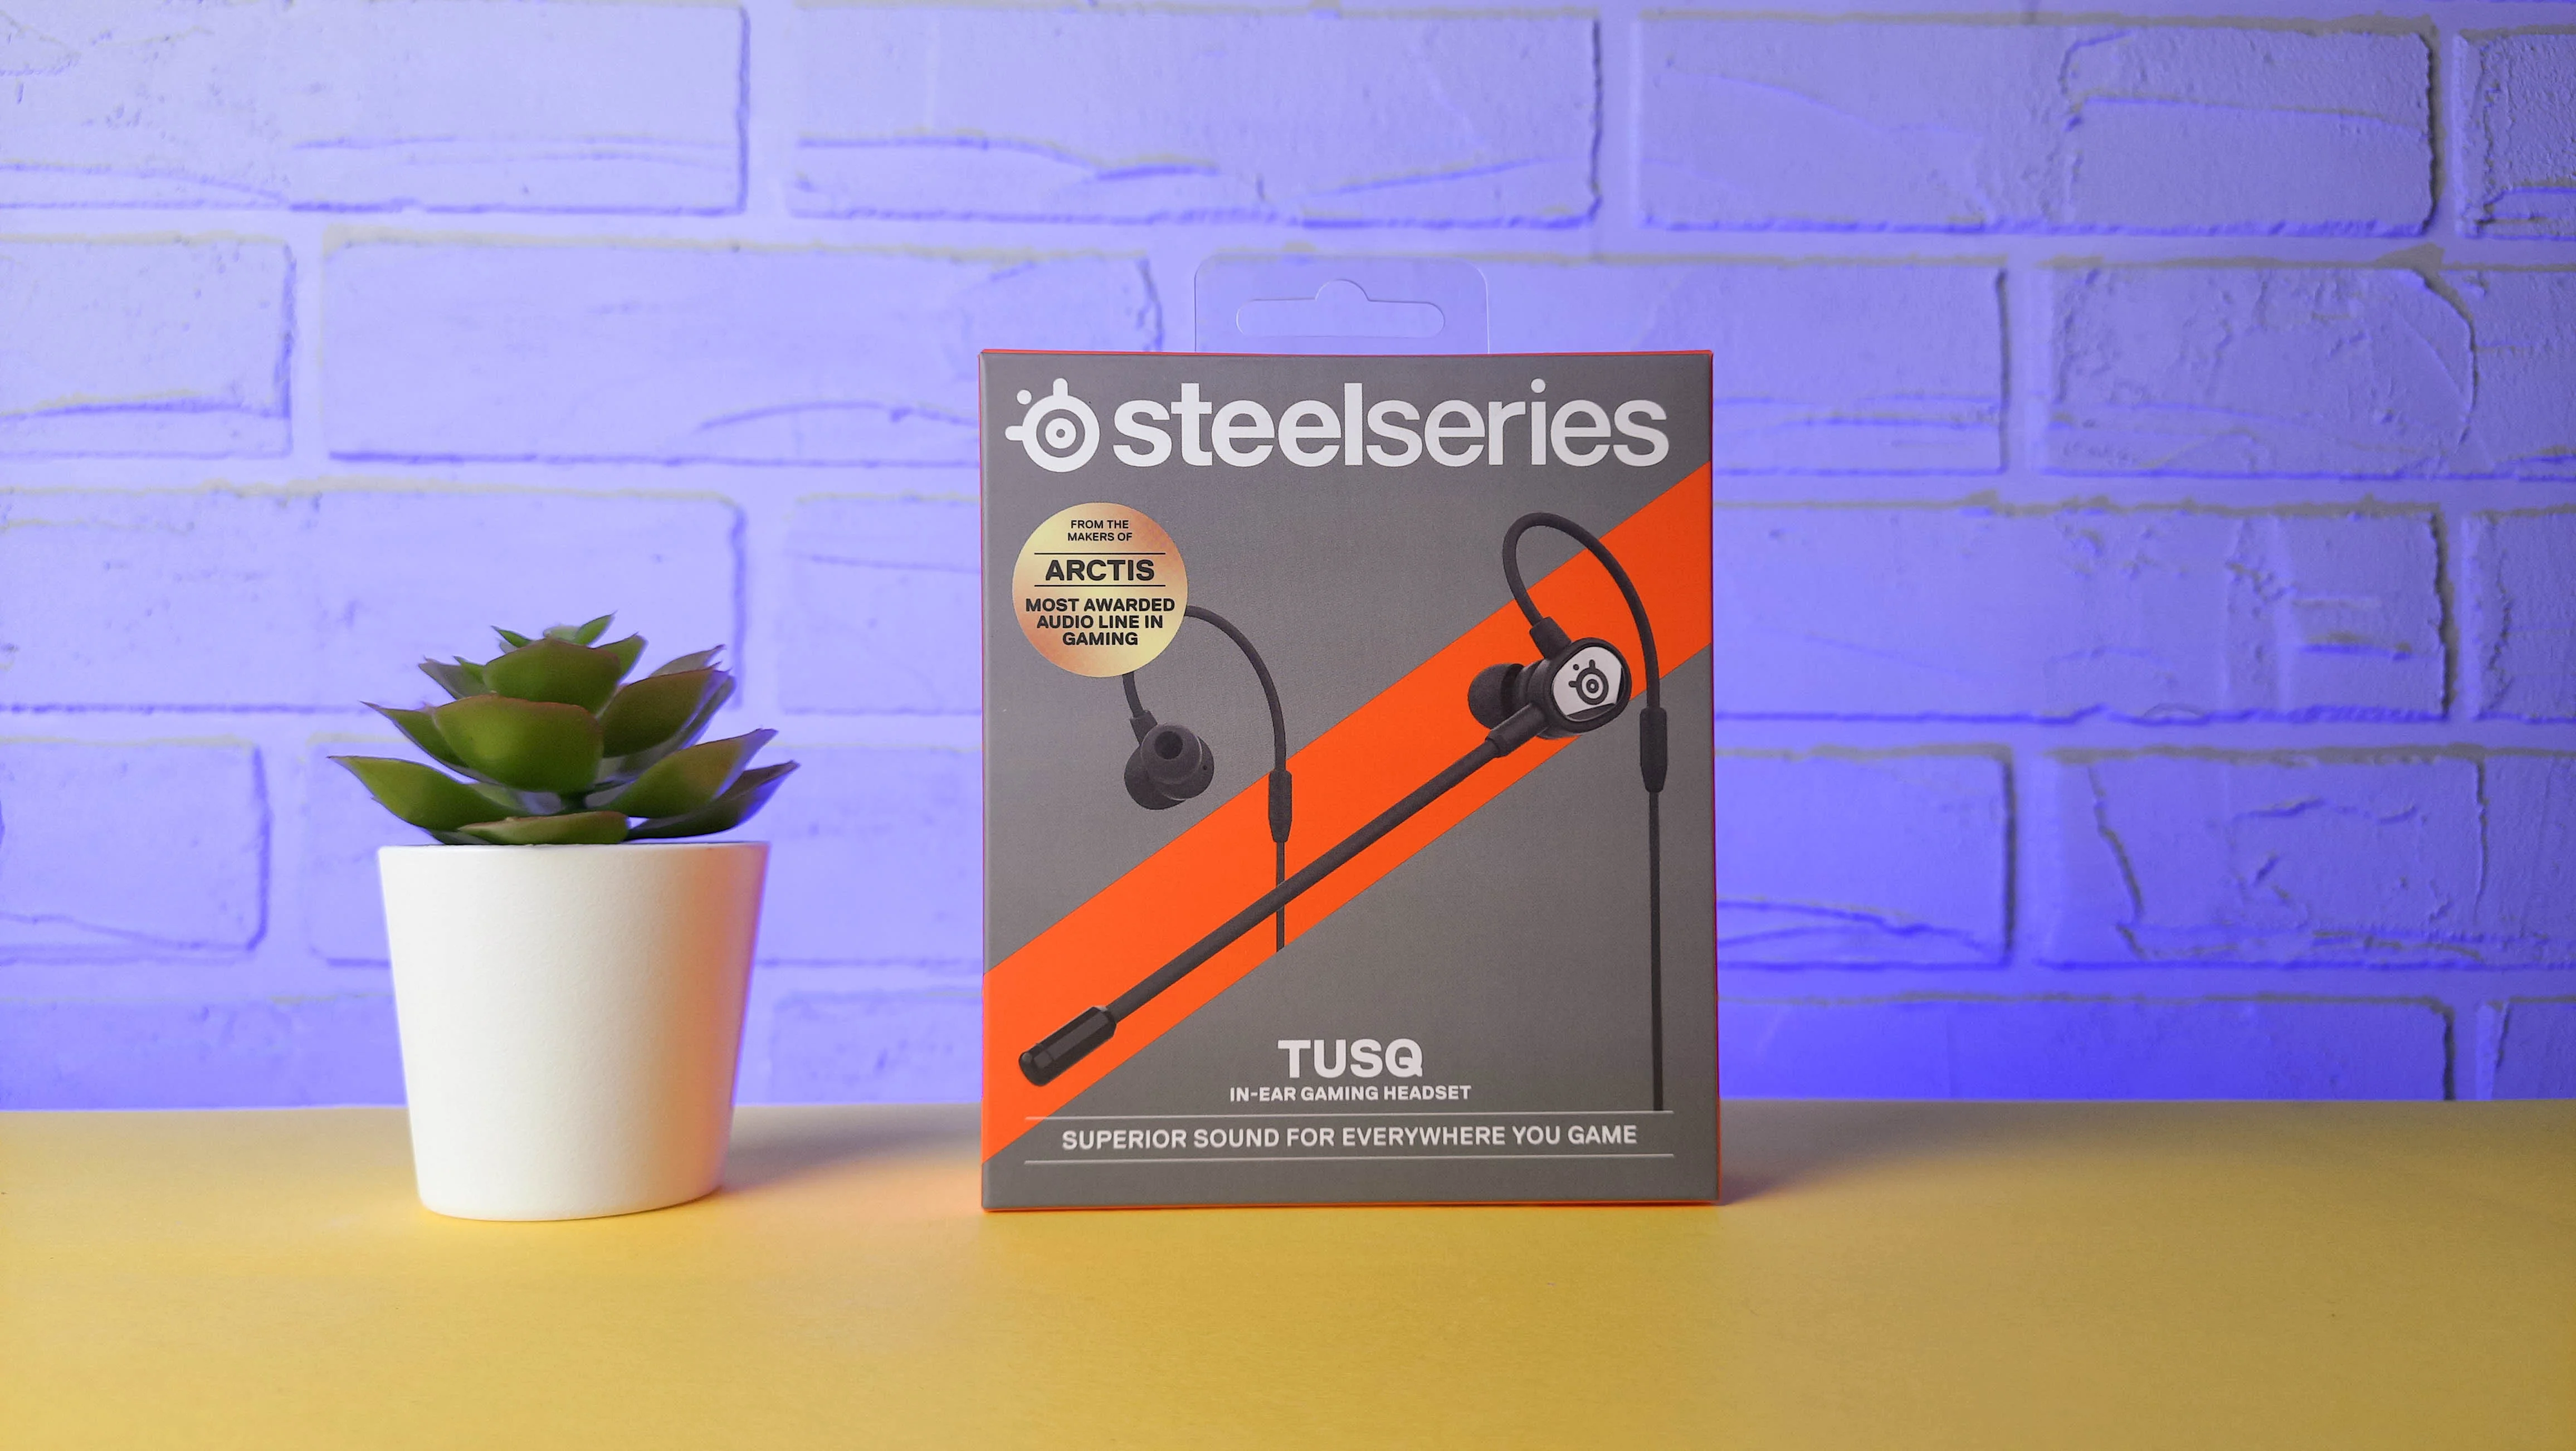 Обзор SteelSeries Tusq: универсальная игровая гарнитура со съёмным микрофоном - фото 7